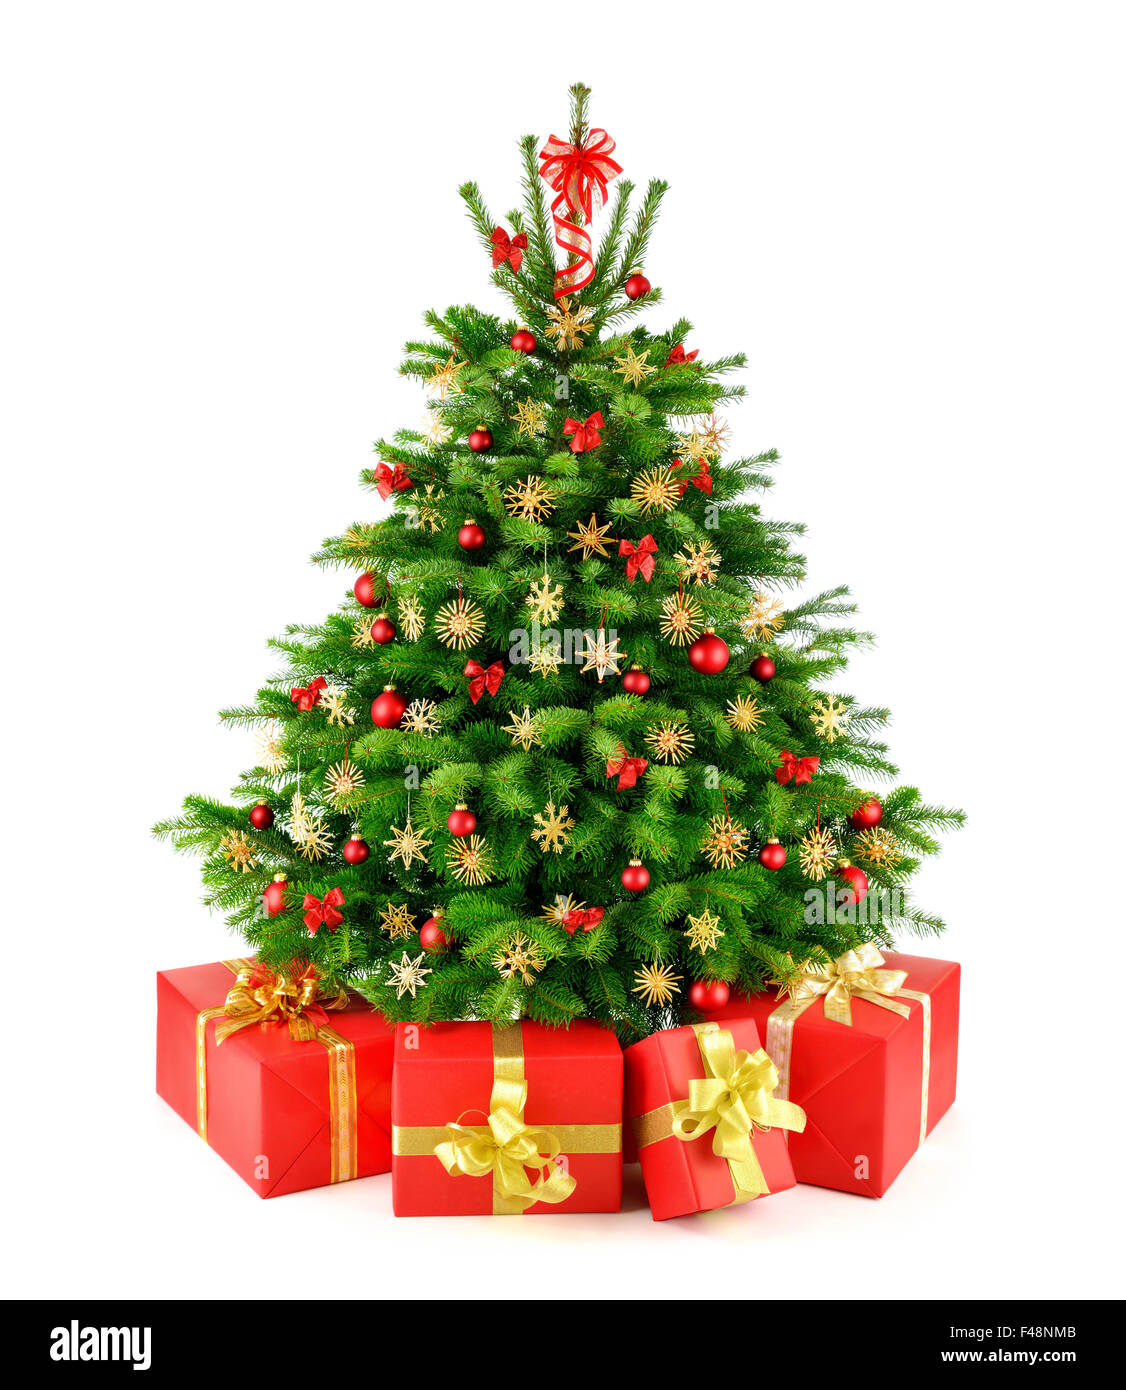 Naturale Rustico Albero Di Natale Con Red Baubles Stelle Di Paglia E Di Gift Matching Scatole Studio Isolato Su Sfondo Bianco Foto Stock Alamy